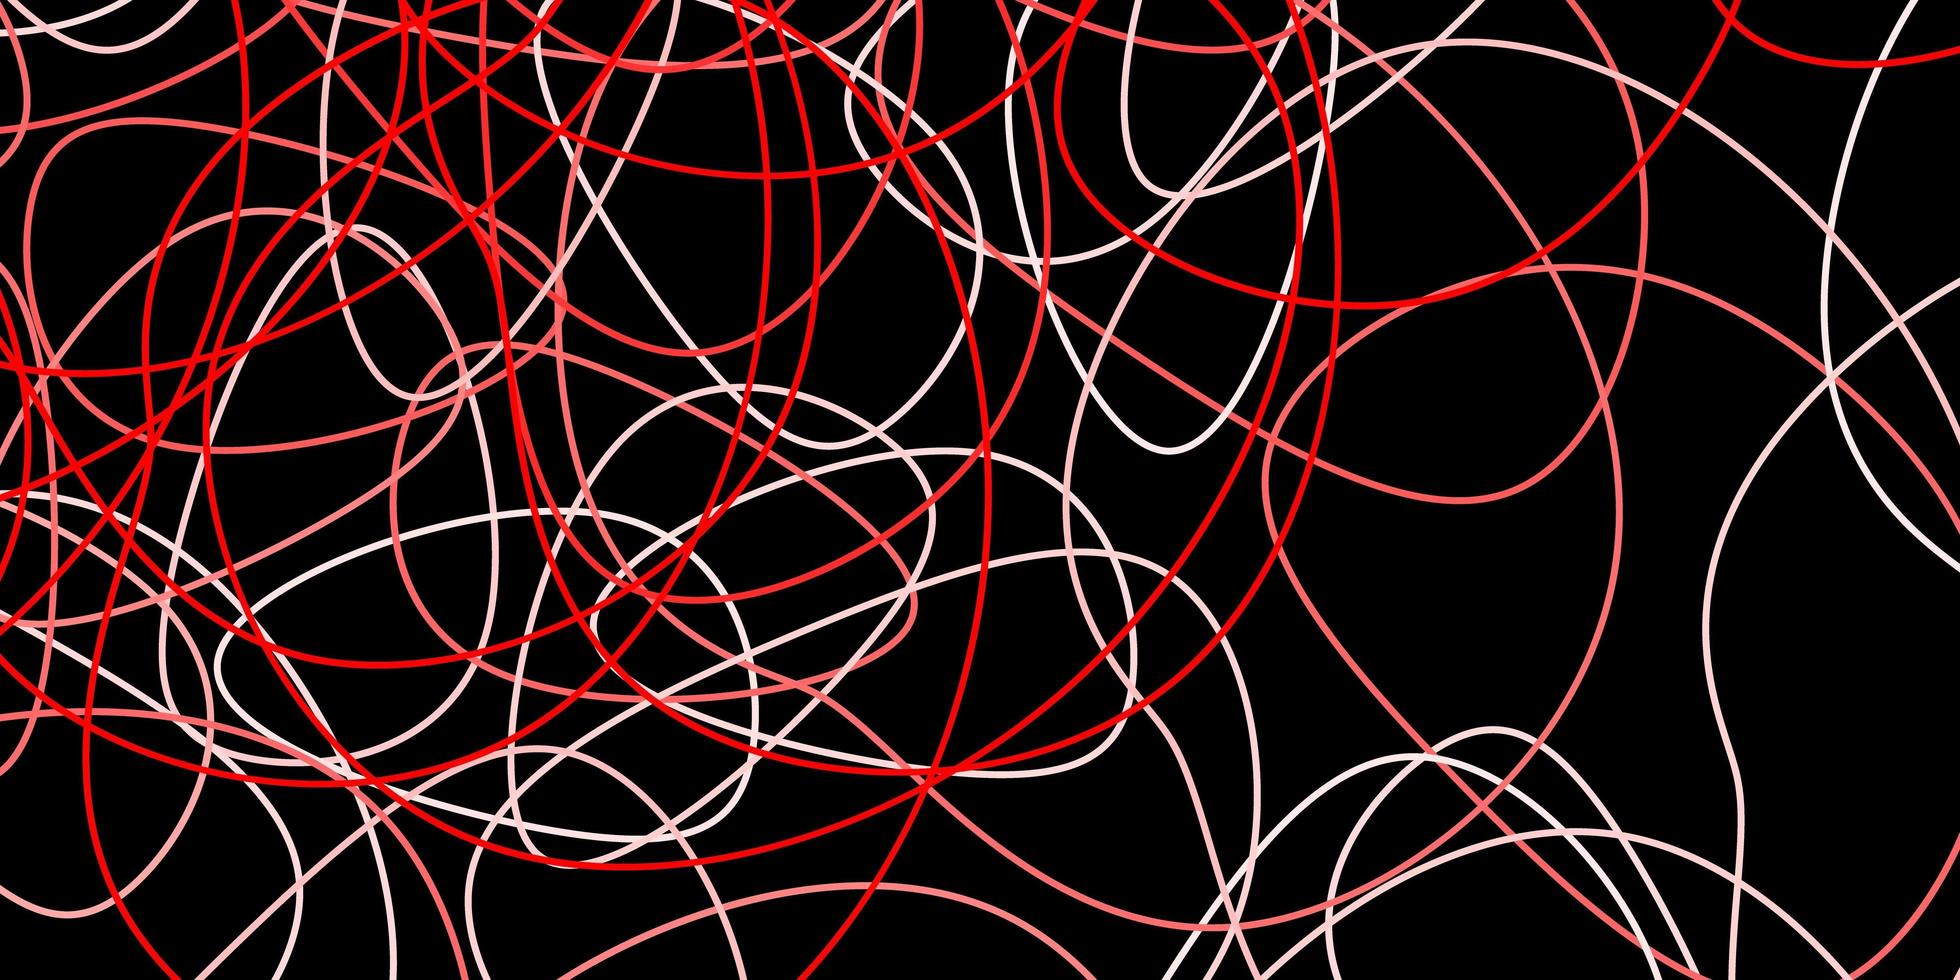 pano de fundo vector vermelho escuro com formas caóticas.